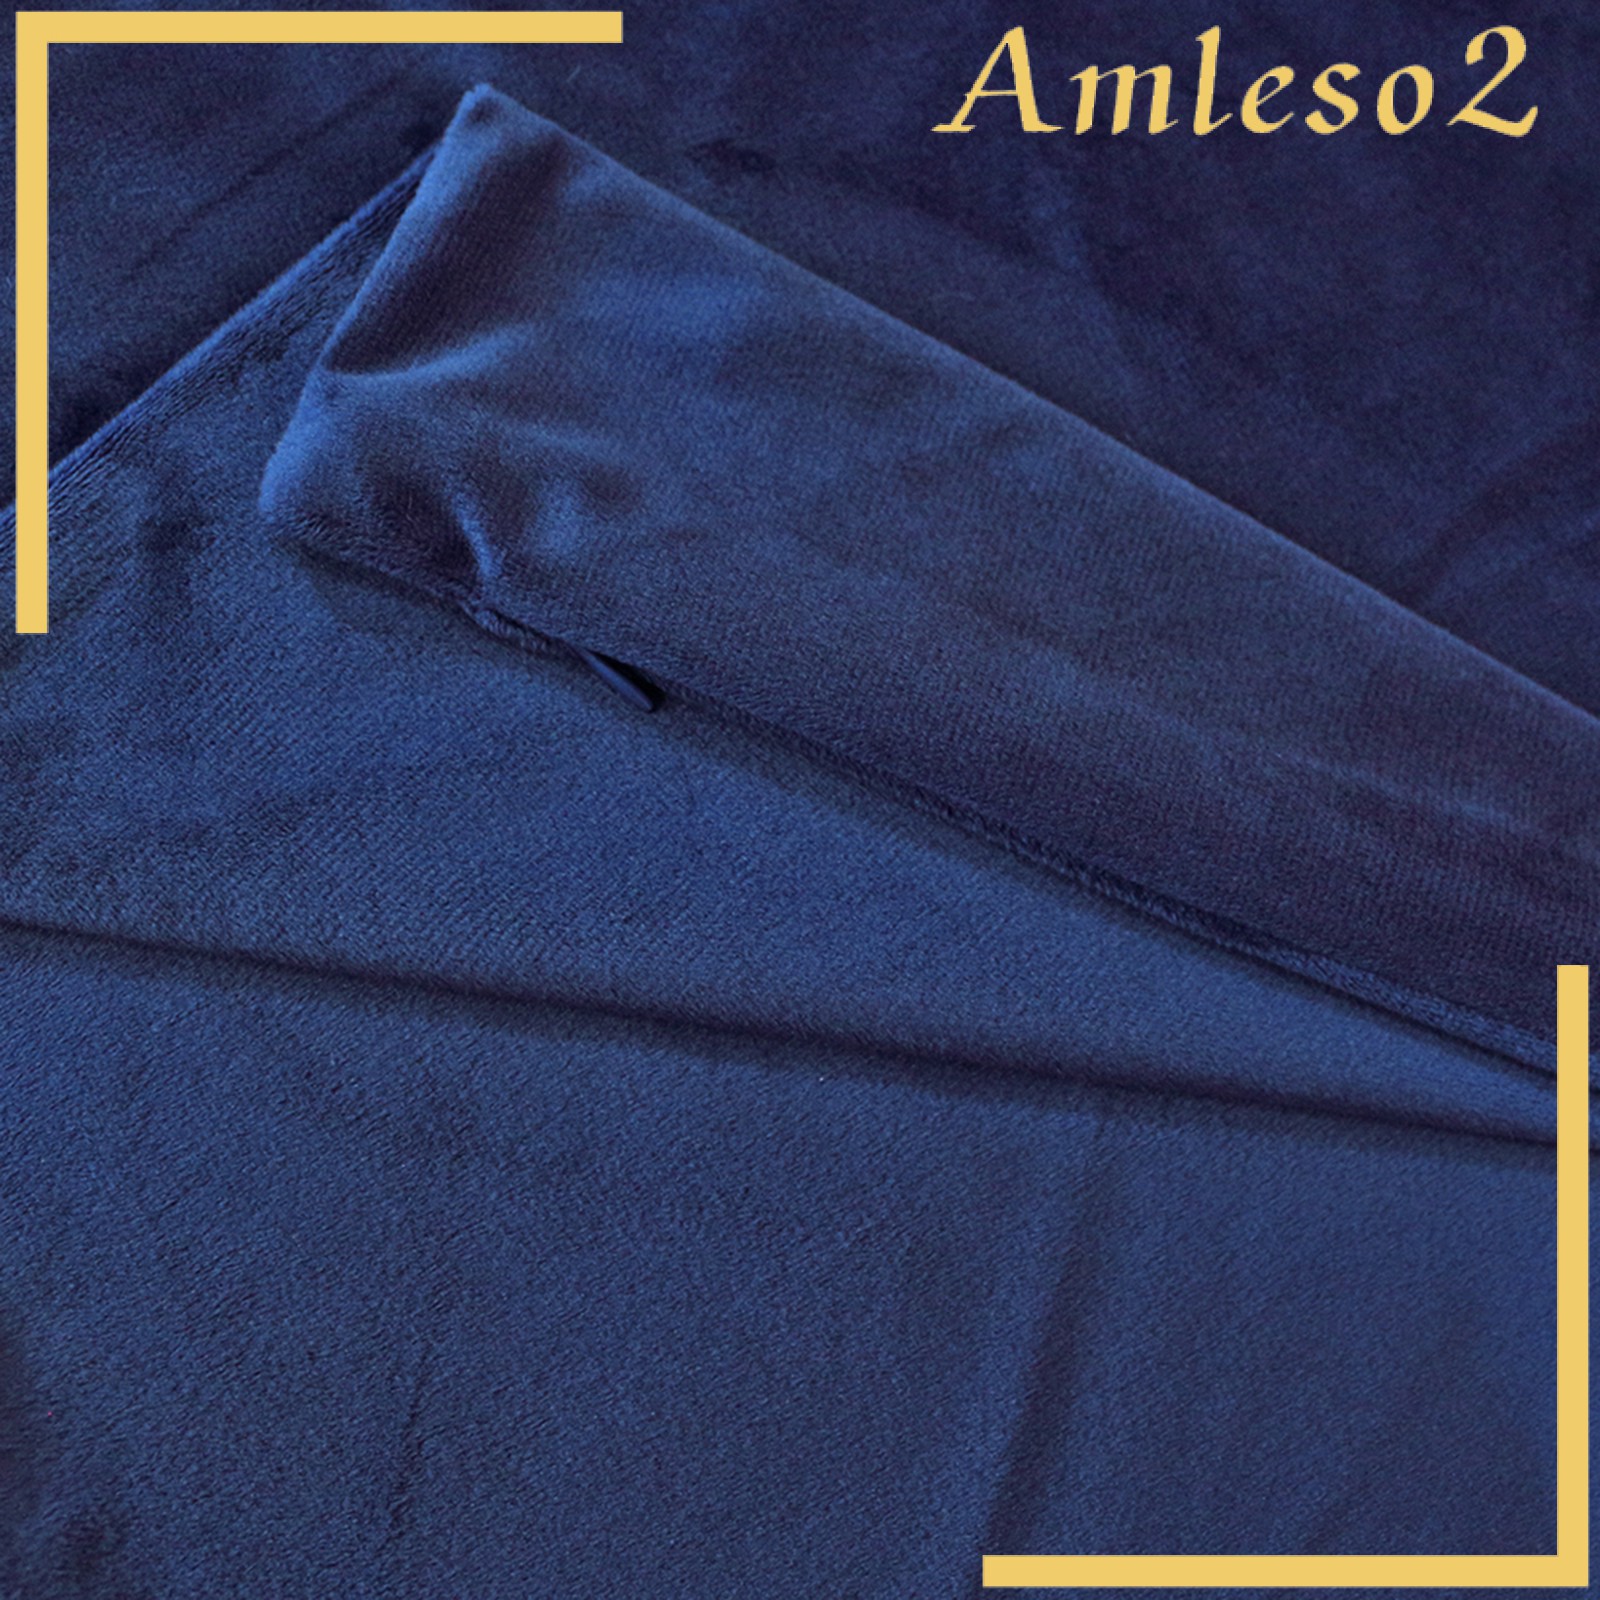 [AMLESO2] Bed Sleep Long Body Pillow Case Cover Velvet Protector Zipper Pillowcase 2 Size